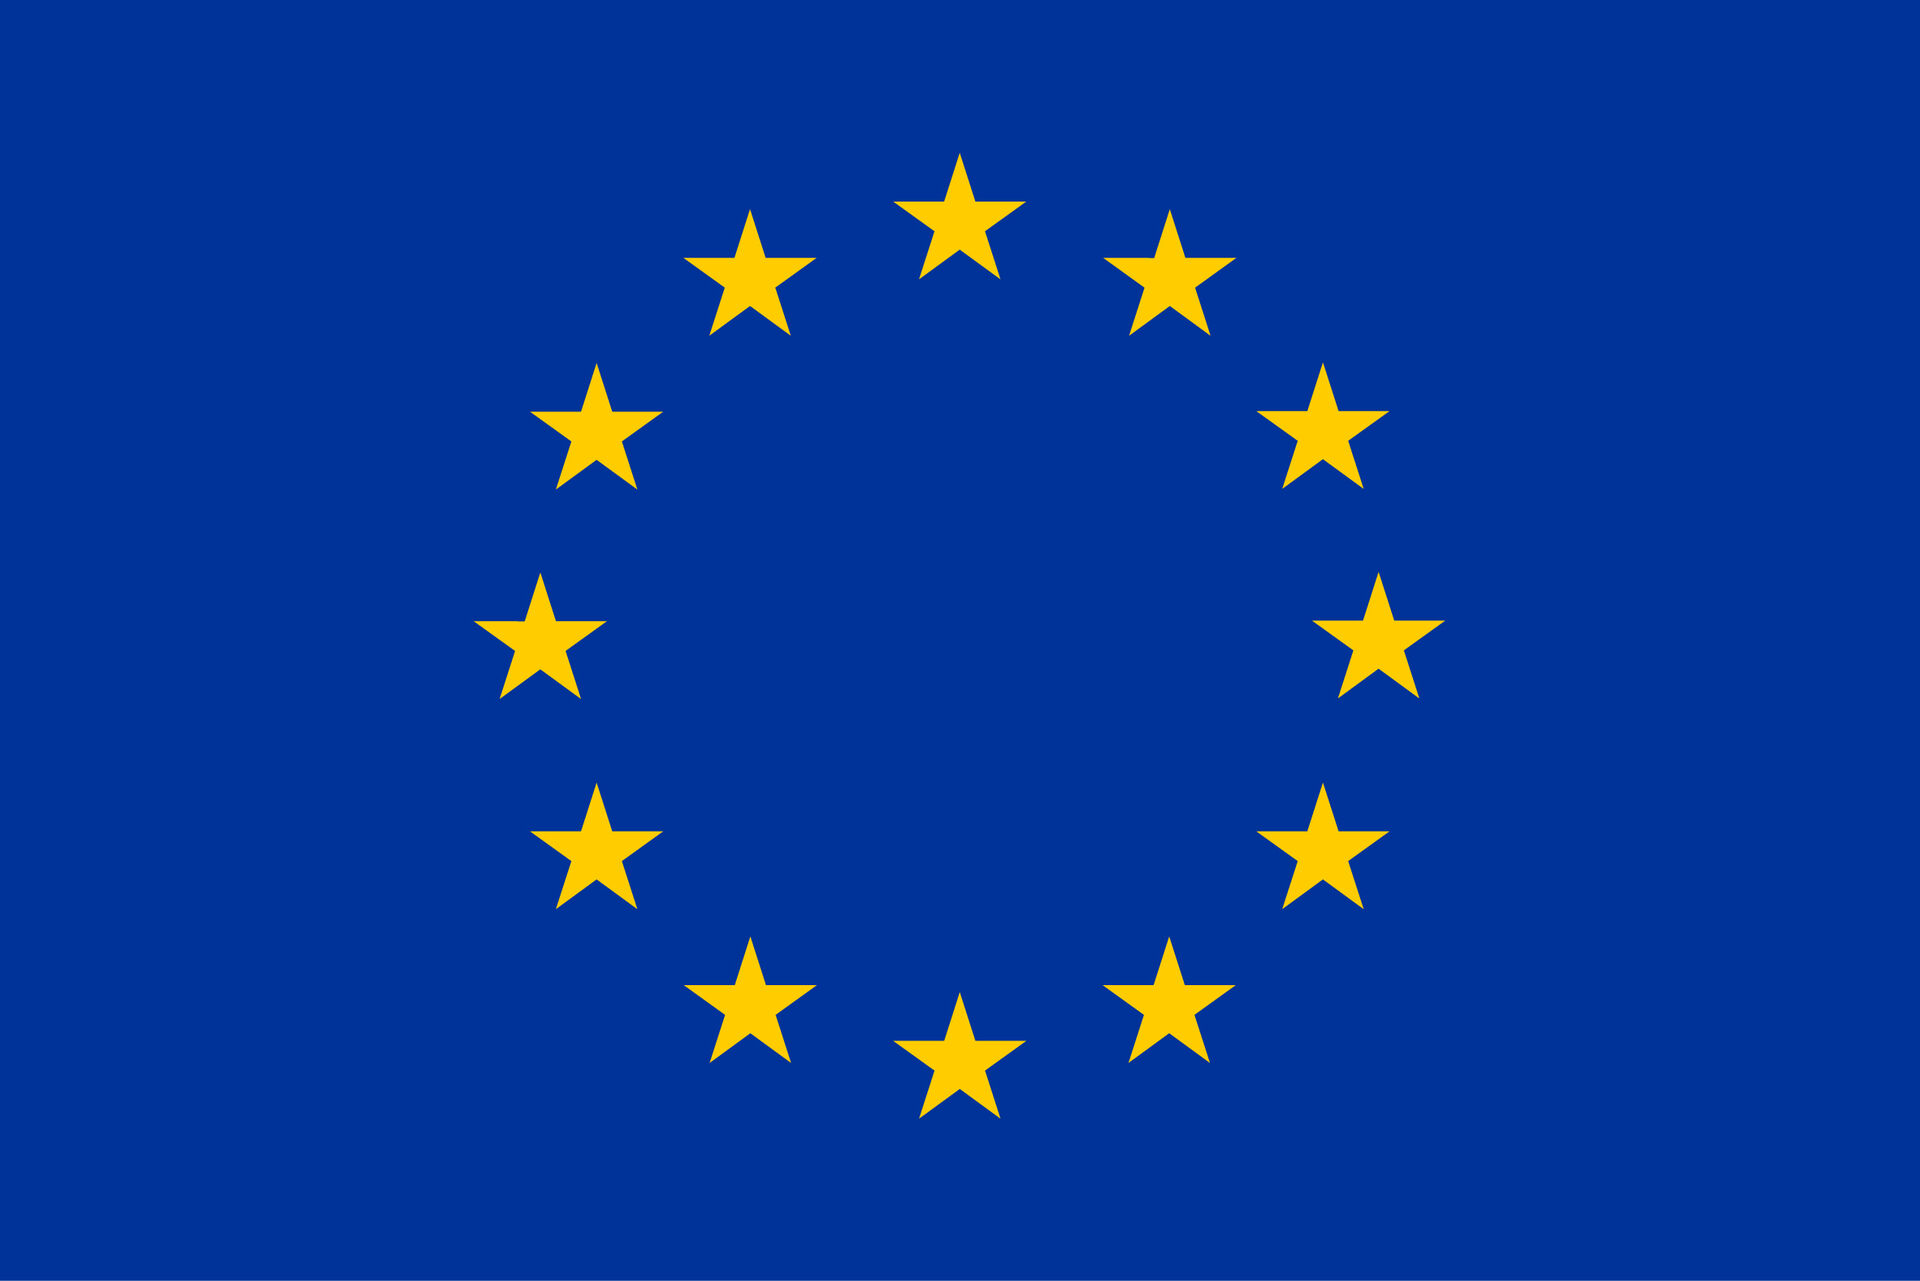 EU-flag